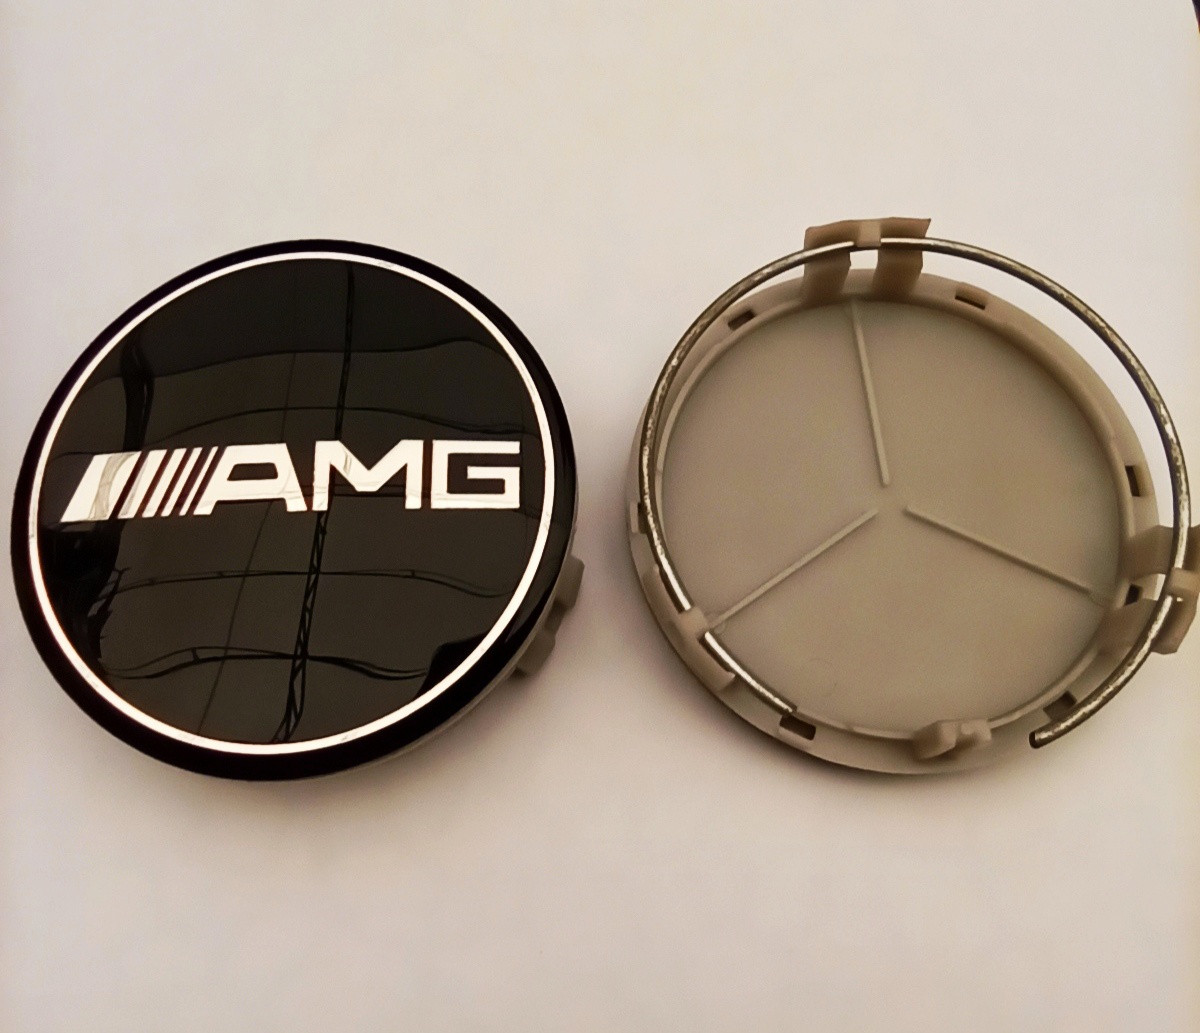 Ковпачок у диск Mercedes AMG чорний діаметр 70-75 мм